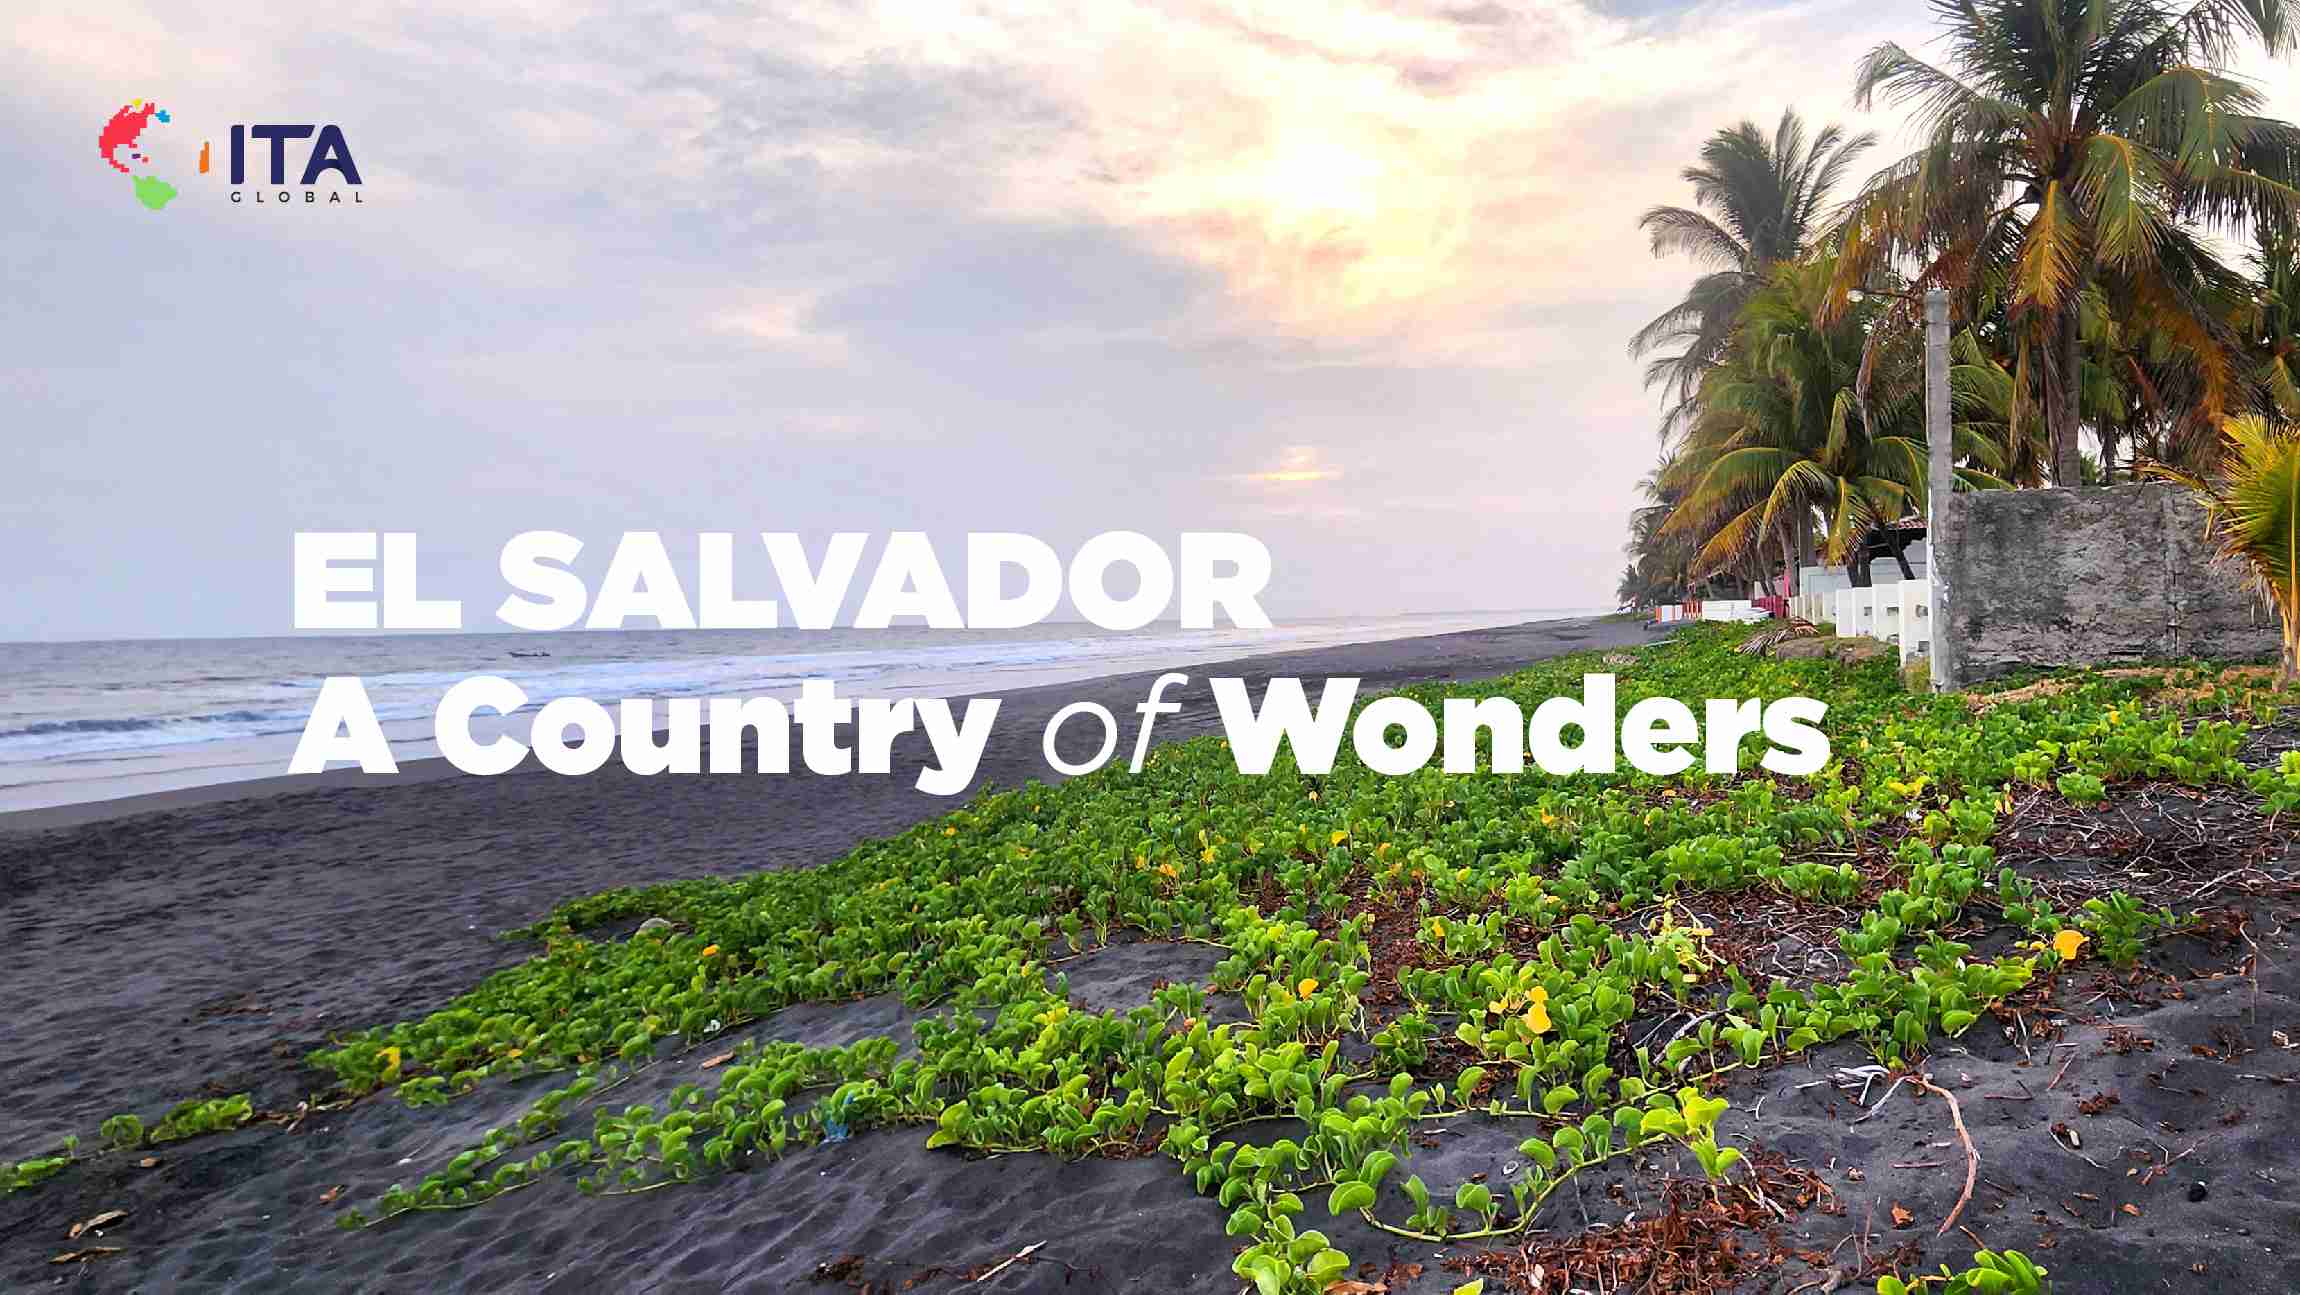 El-Salvador-A-Country-Of-Wonders-slide-img